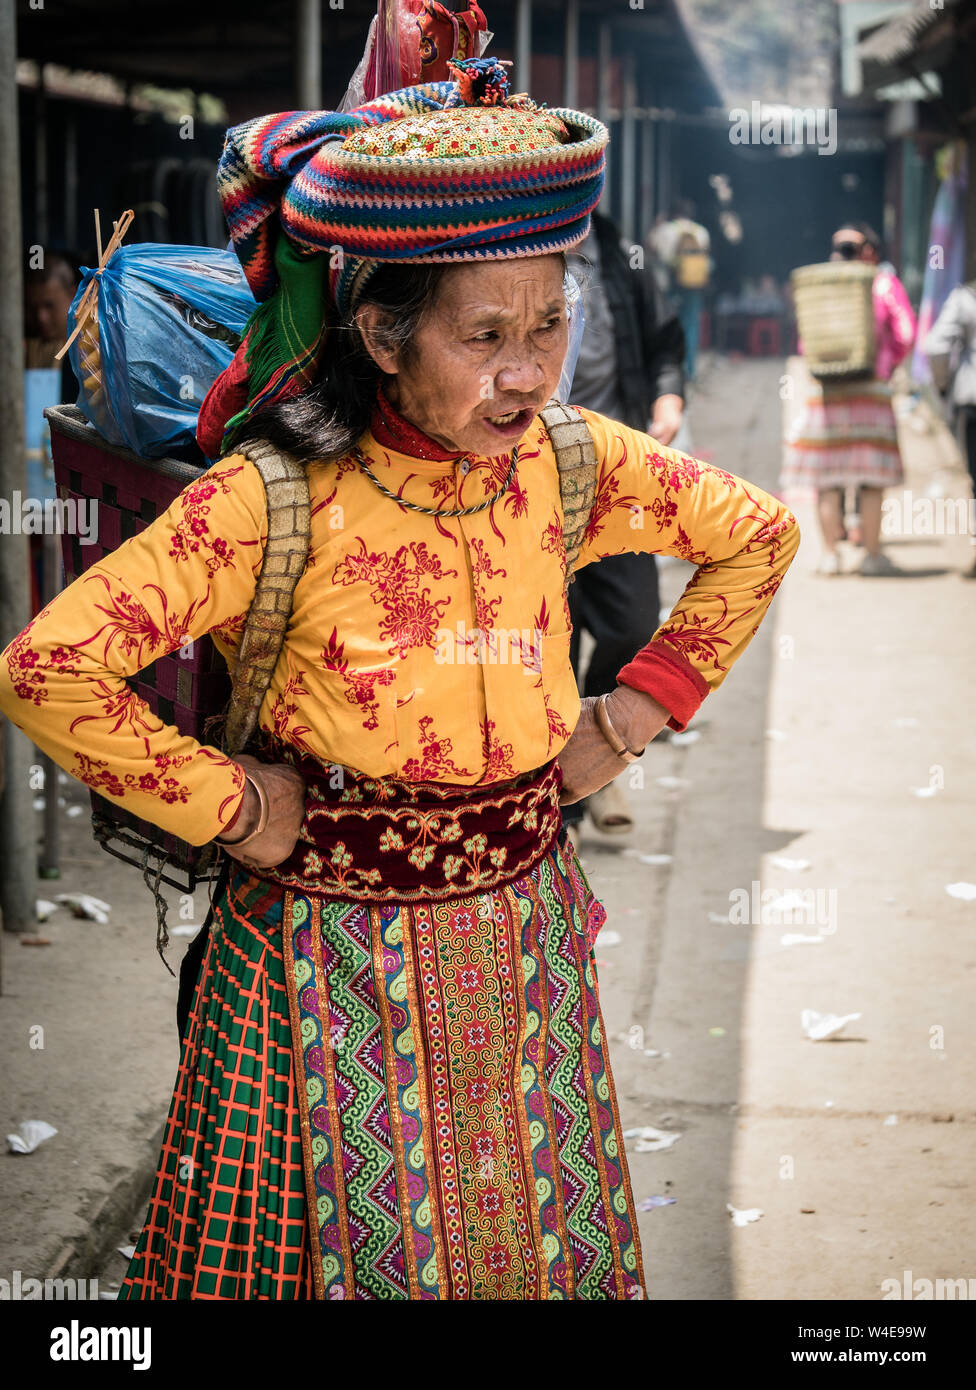 Dong Van, Vietnam - 05/26/2019: vecchia signora vietnamita con cesto sulla schiena in tradizionali abiti colorati della minoranza etnica di Dong Van mercato domenicale Foto Stock